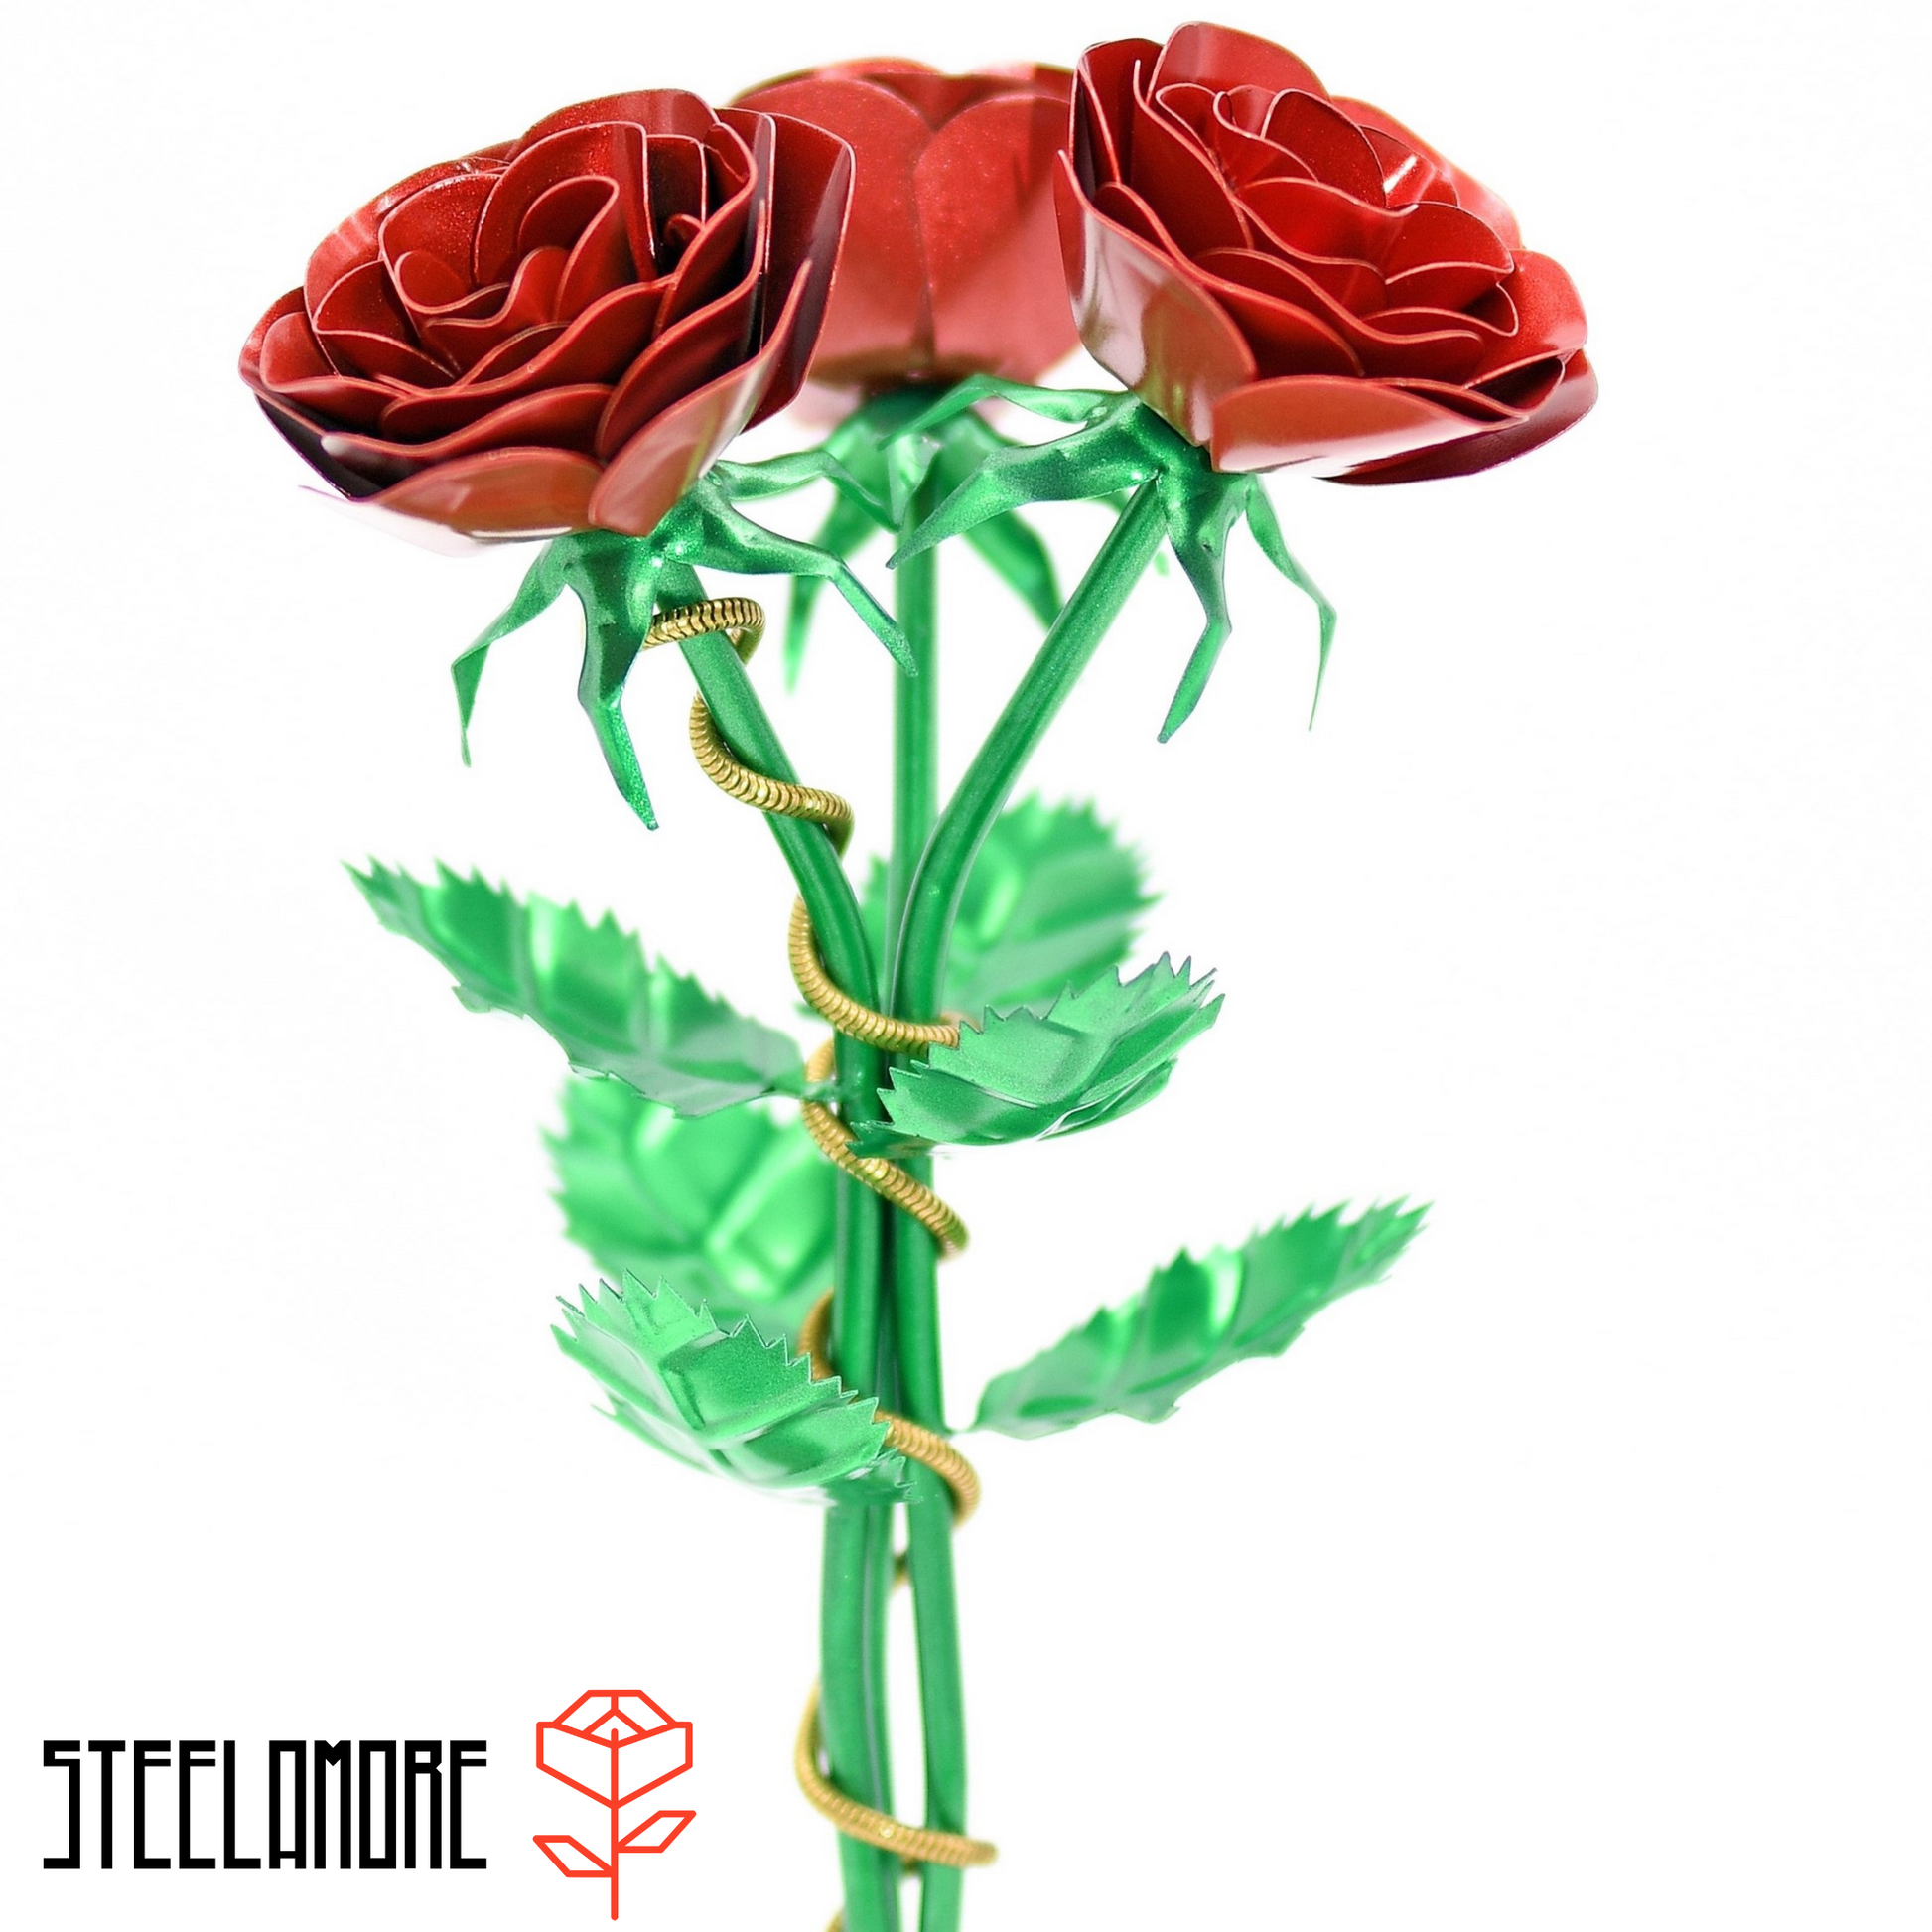 Rosenstrauß aus drei Stahlrosen mit roten Rosenblütenblätter, grünem Stiel und Blättern sowie goldener Zierkette